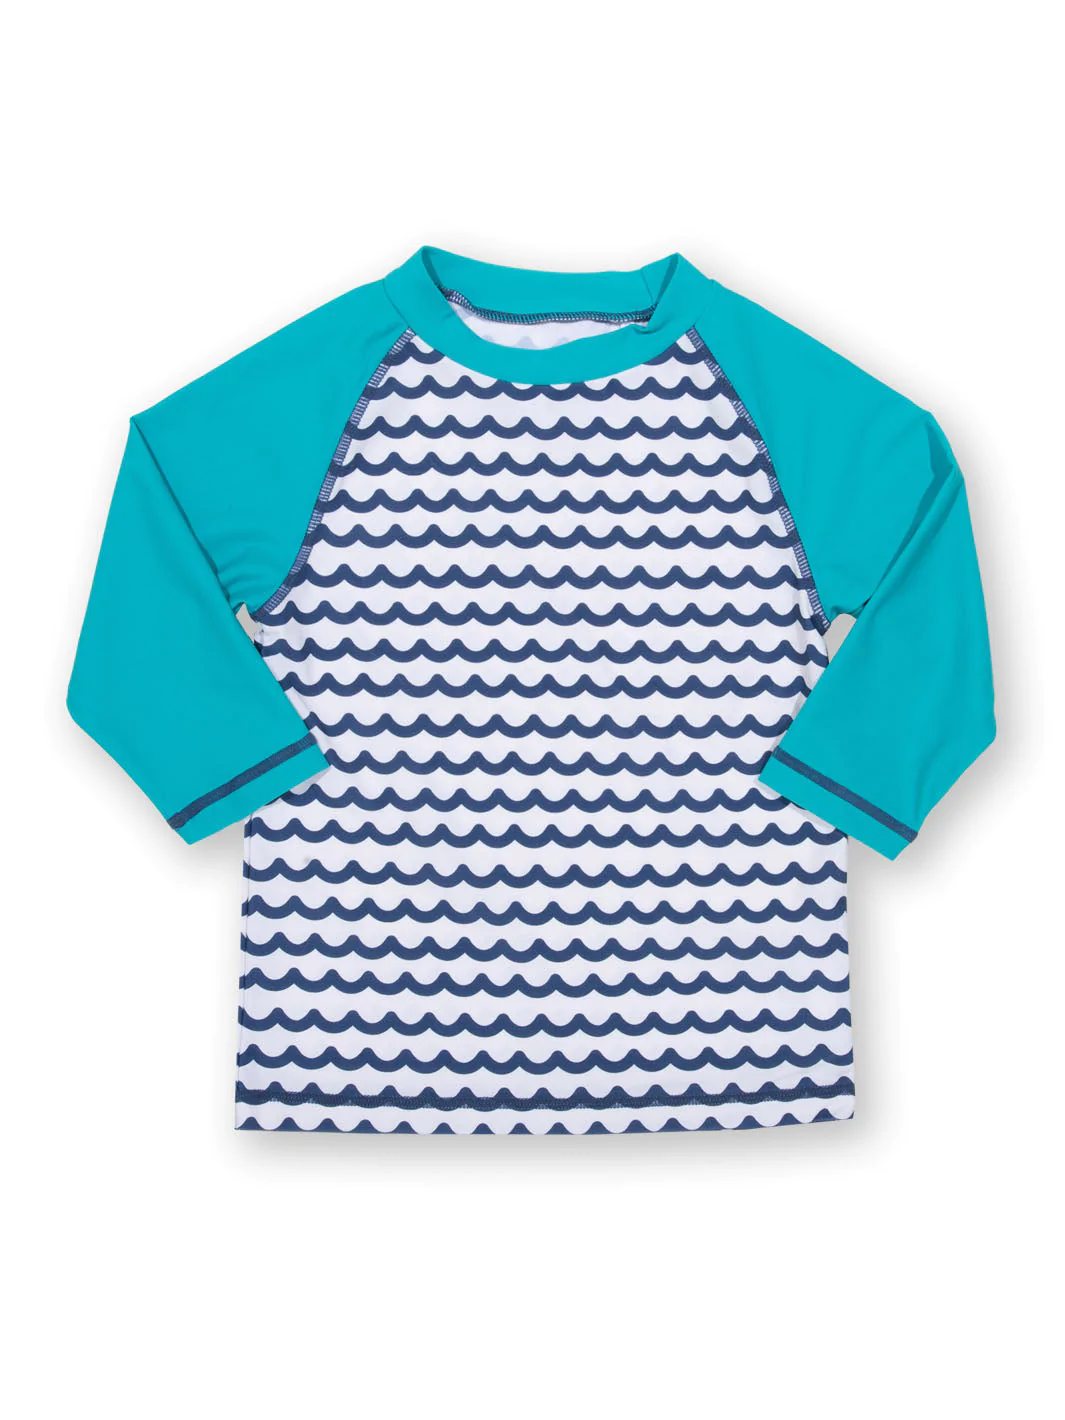 Strandshirt, Waves, UV-Schutz, Kite Clothing, Gr. 98